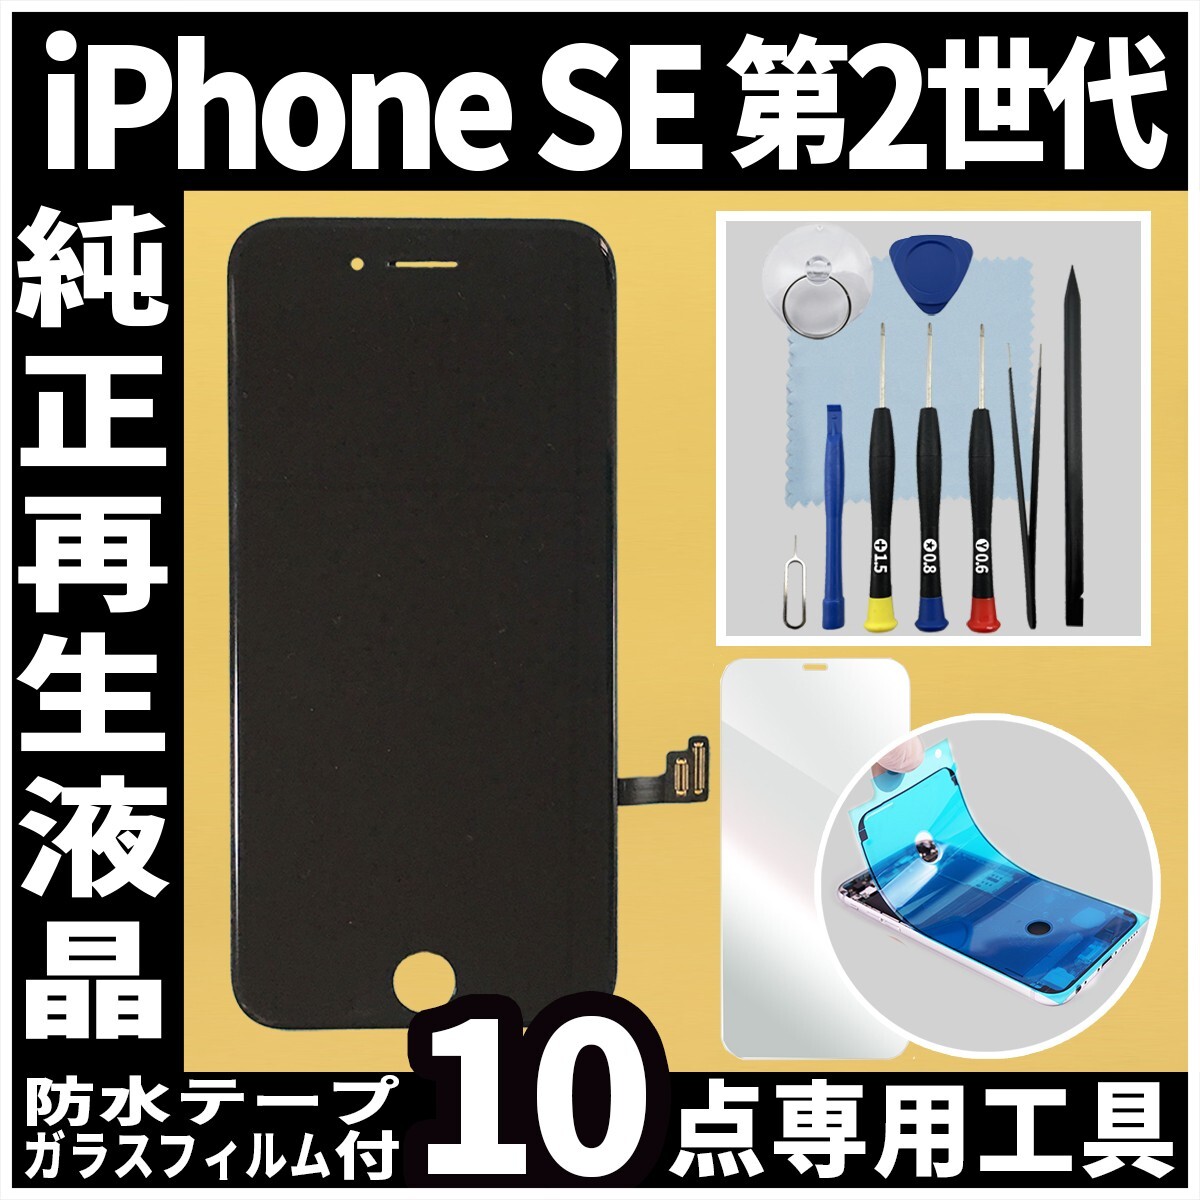 純正再生品 iPhoneSE2 フロントパネル 黒 純正液晶 自社再生 業者 LCD 交換 リペア 画面割れ iphone 修理 ガラス割れ 防水テープの画像1